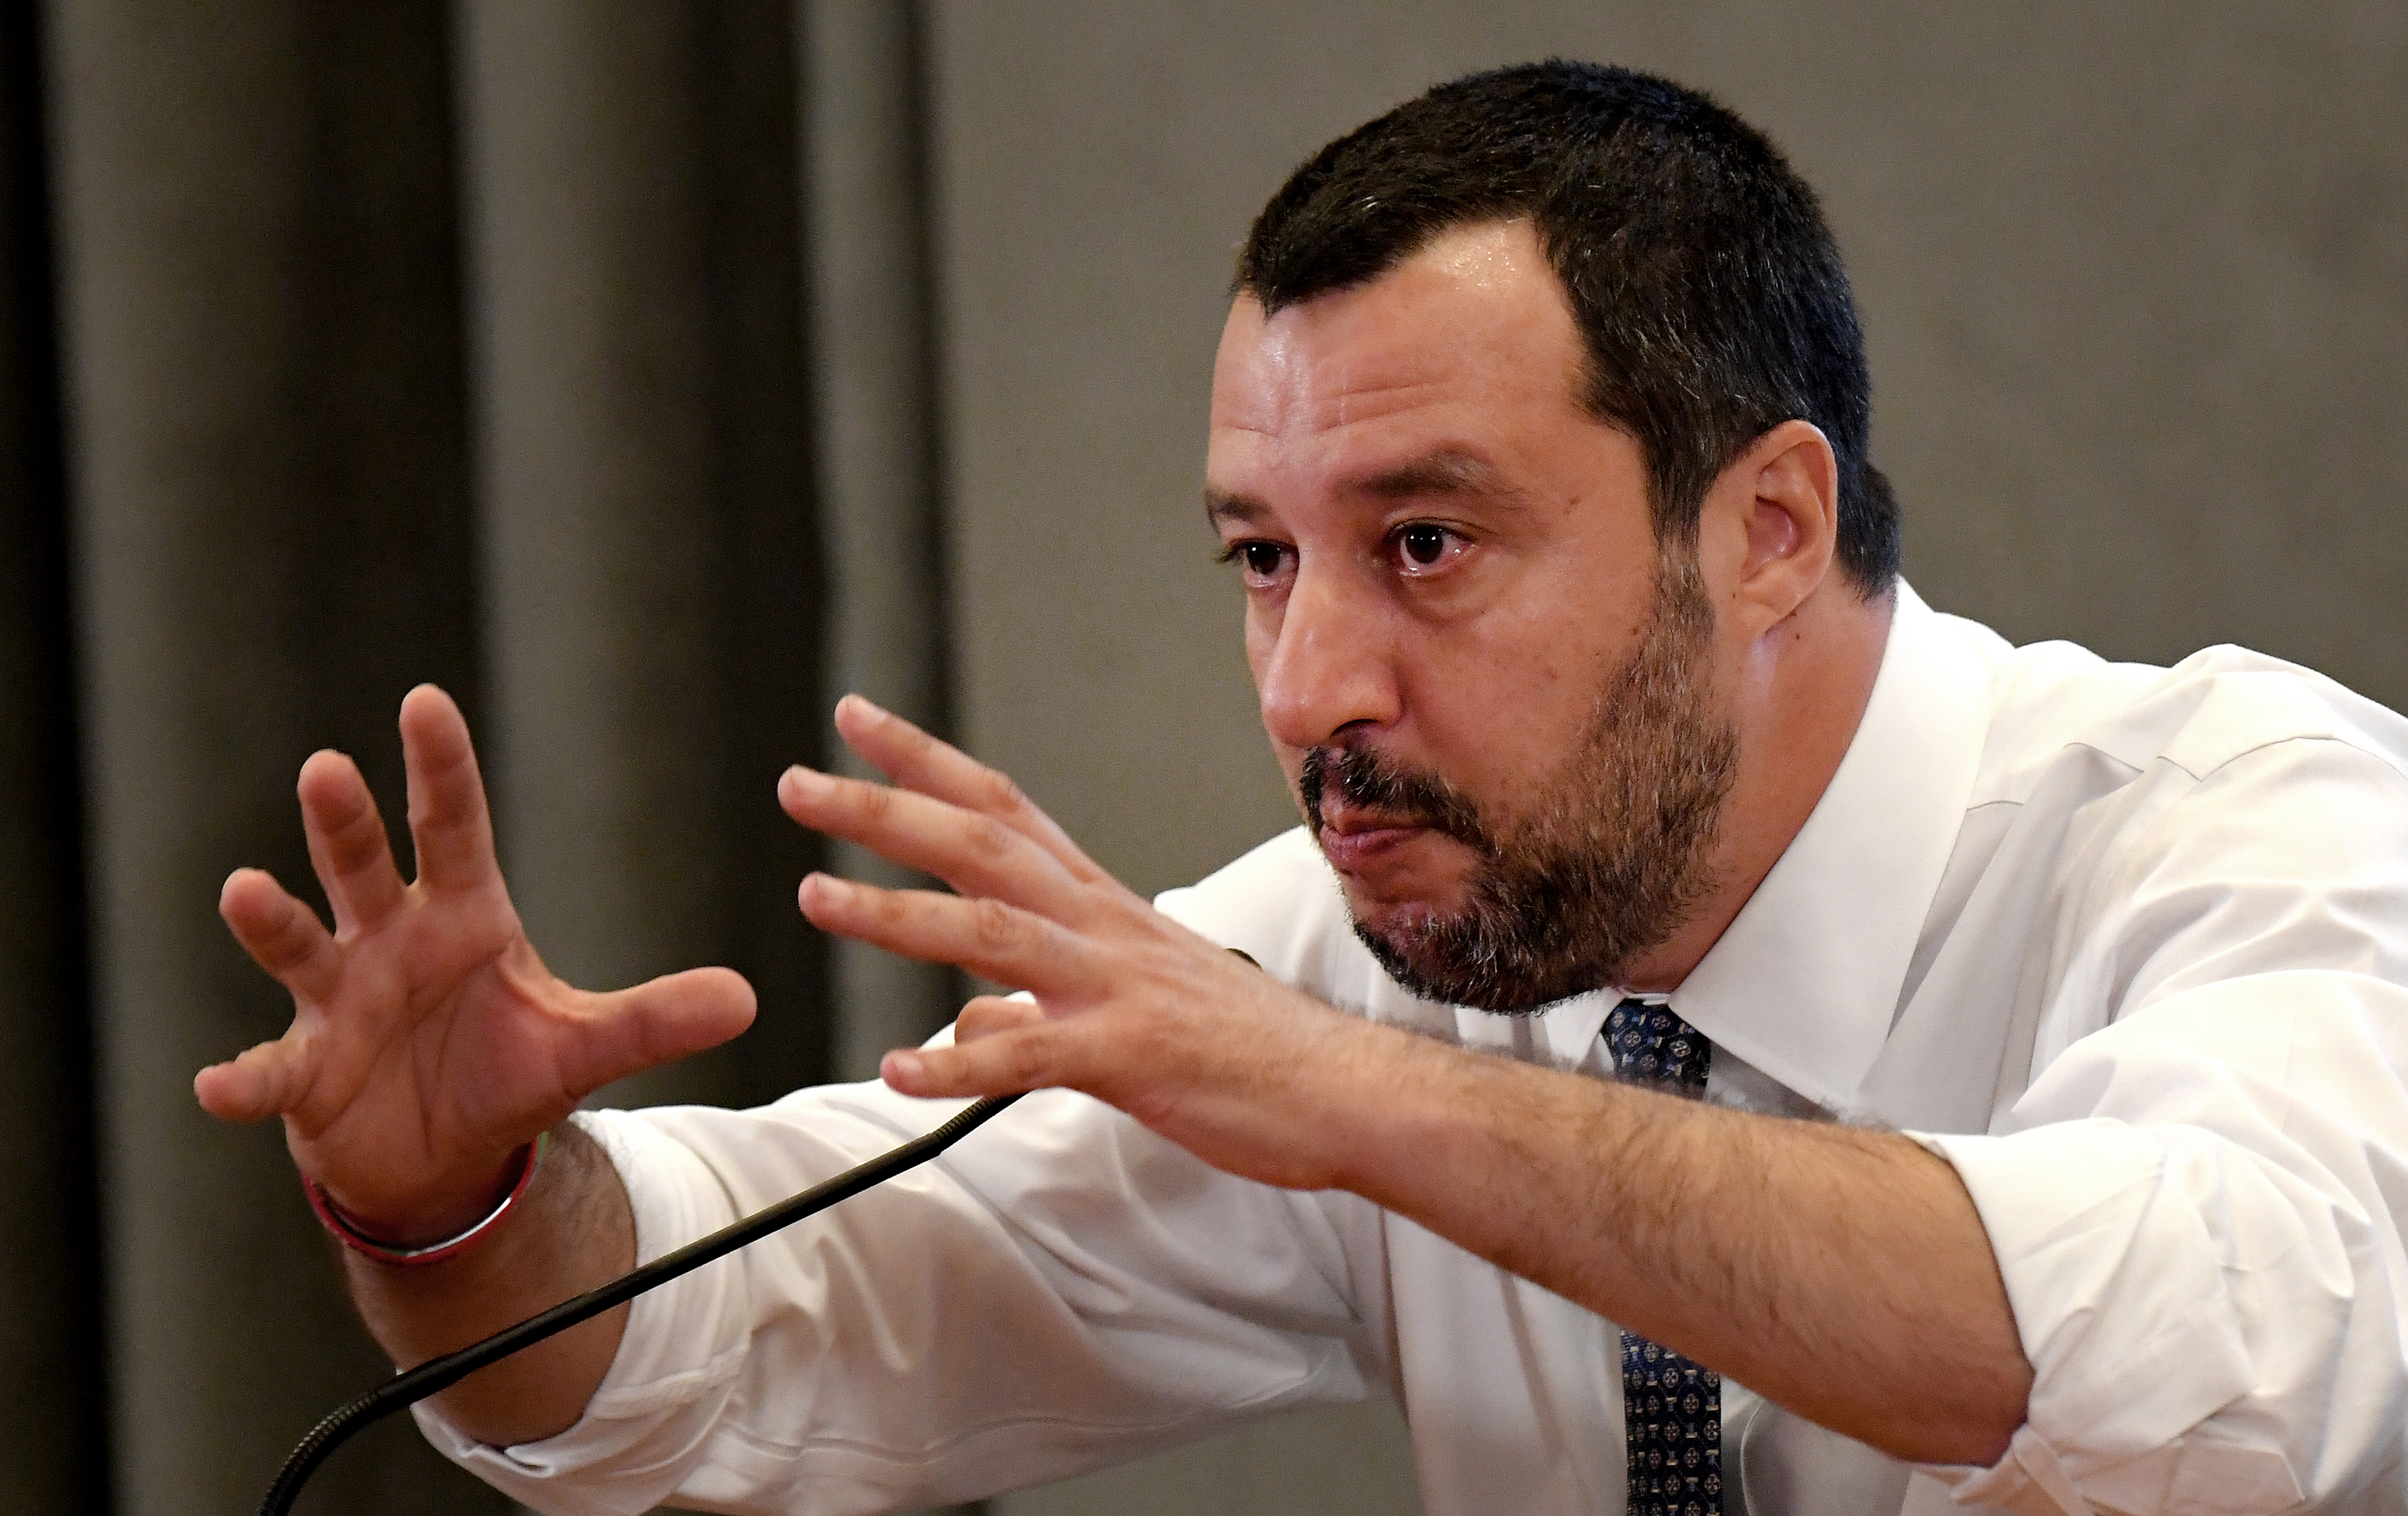 Matteo Salvini perel, mert az alvilág miniszterének nevezték